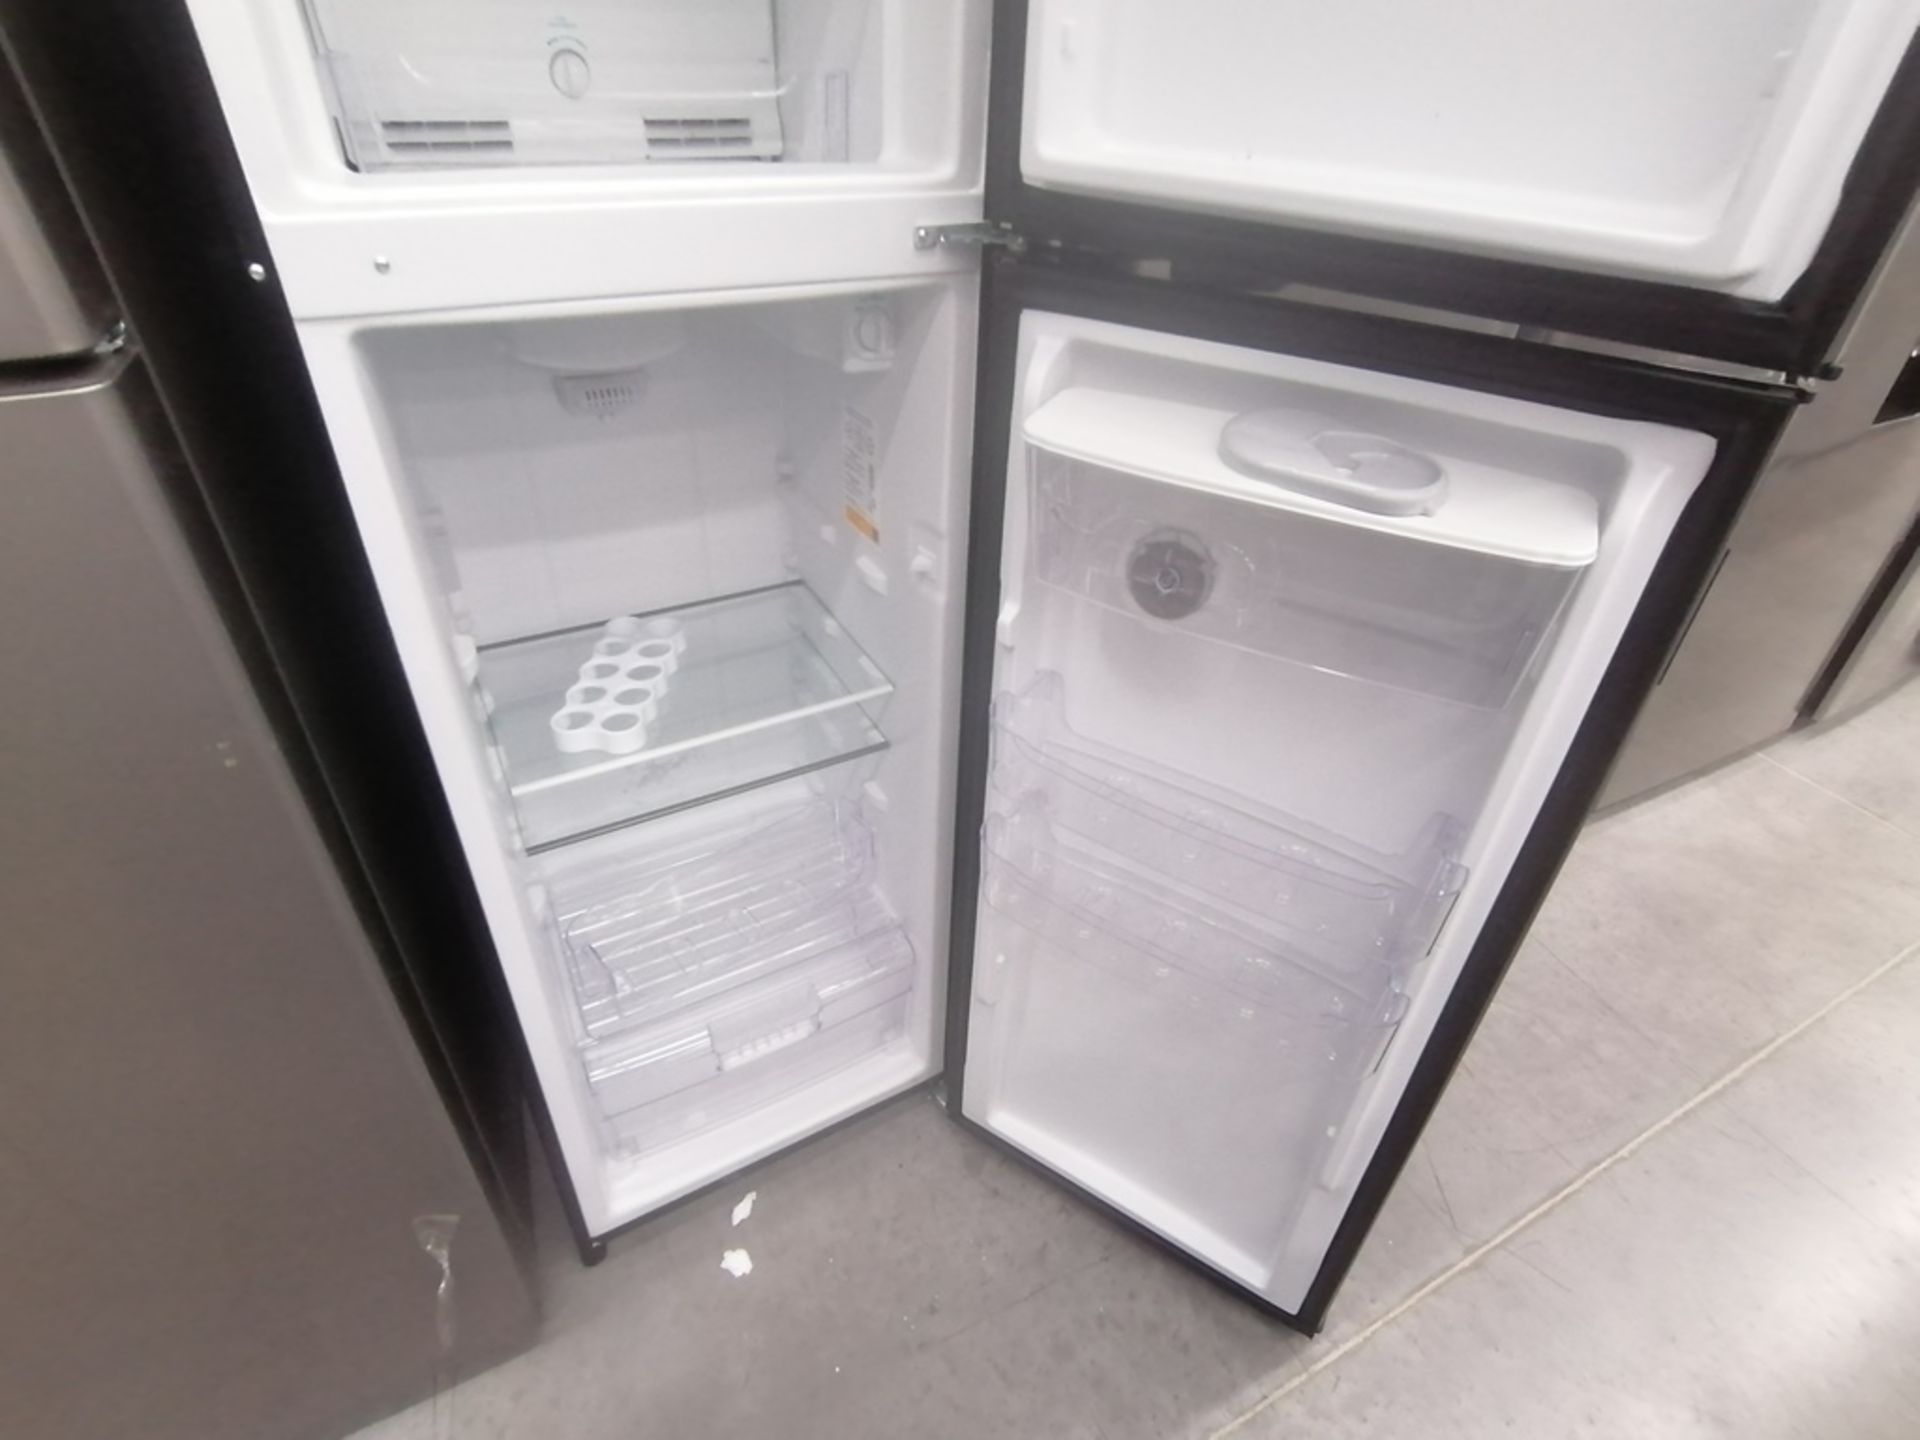 Lote de 2 refrigeradores incluye: 1 Refrigerador con dispensador de agua, Marca Whirlpool, Modelo W - Image 9 of 15